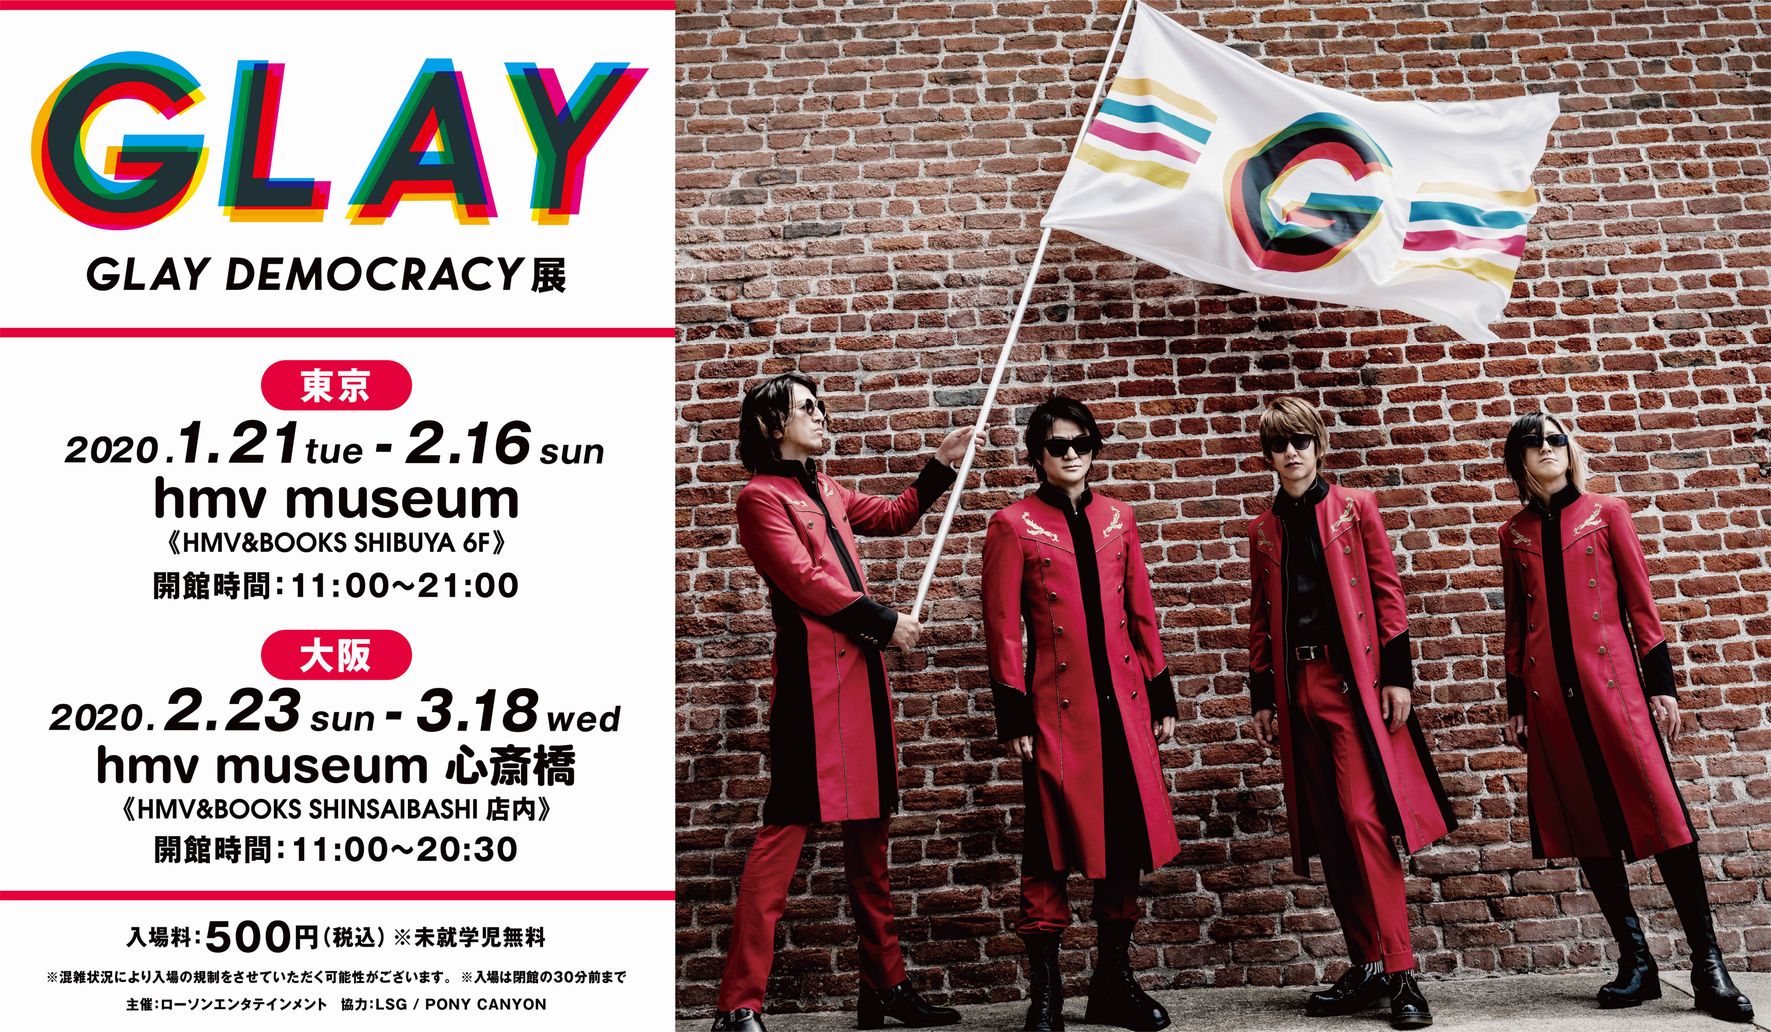 大好評につき 巡回開催決定 Glayのデビュー25周年を記念した企画展 Glay Democracy展 東京 大阪での巡回開催が決定 株式会社ローソンエンタテインメントのプレスリリース